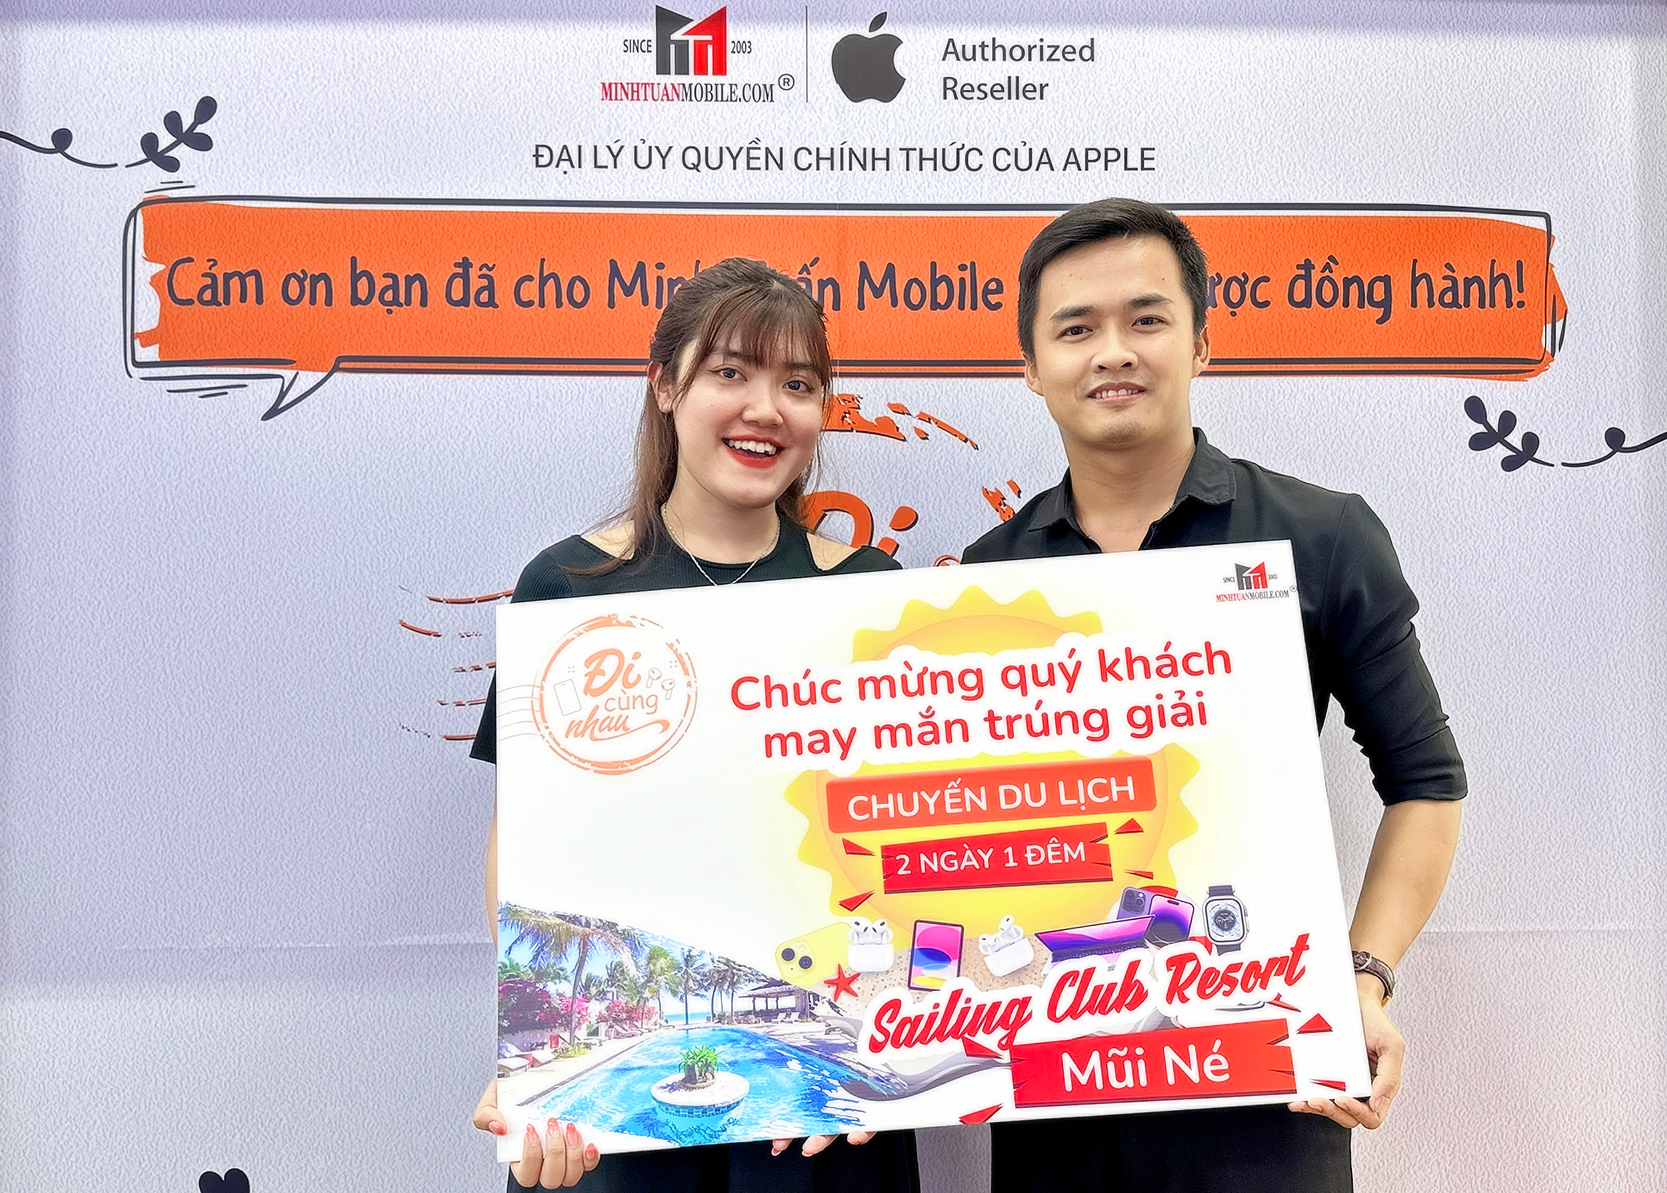 Trúng chuyến du lịch trọn gói nhờ mua iPhone tại Minh Tuấn Mobile